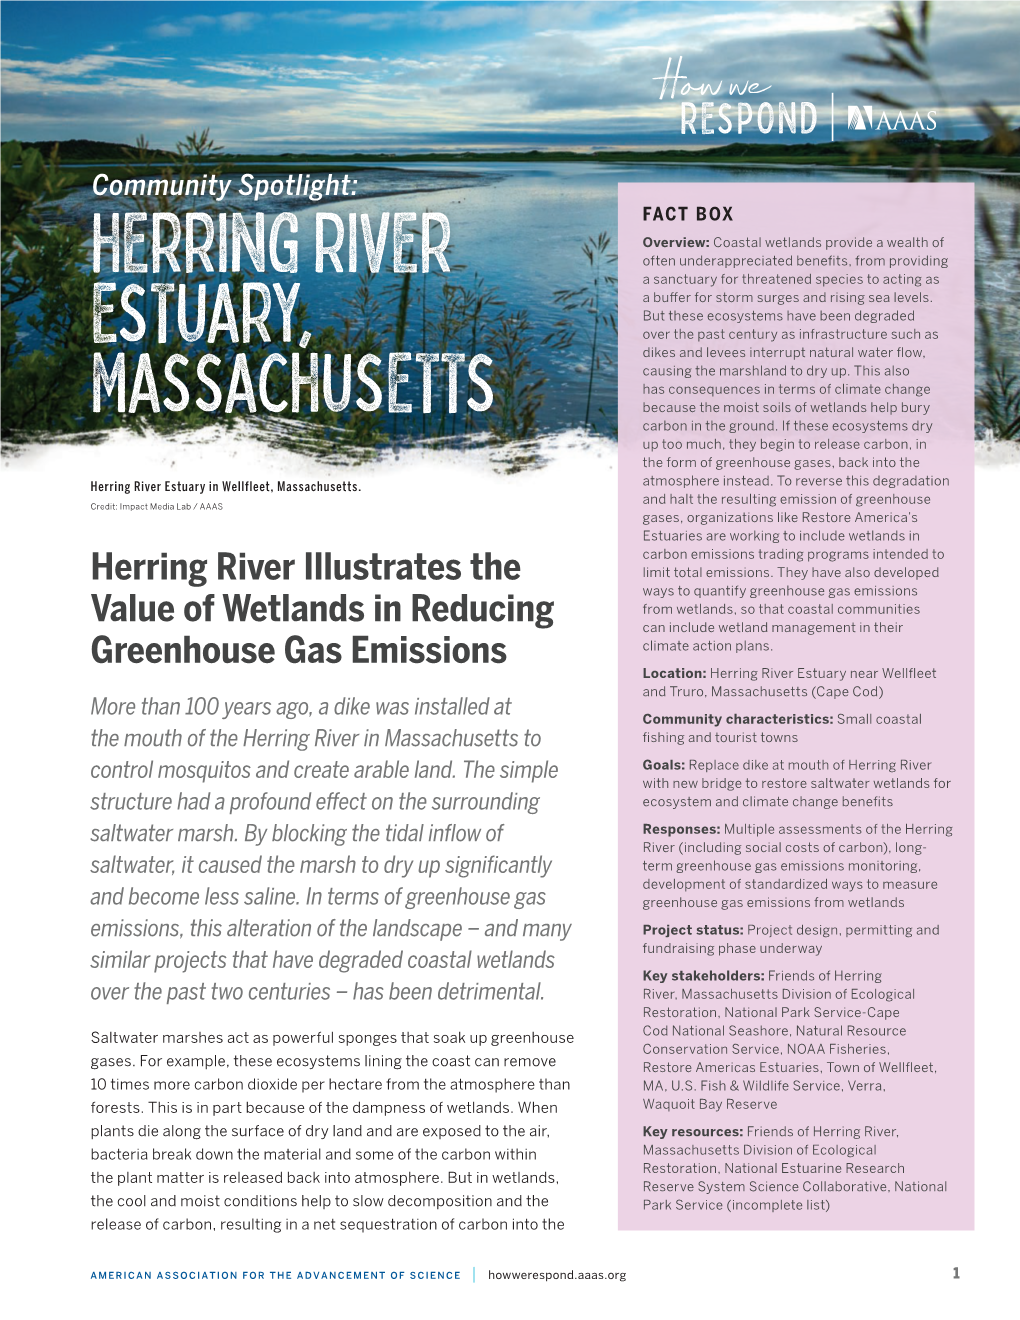 Herring River Estuary, Massachusetts